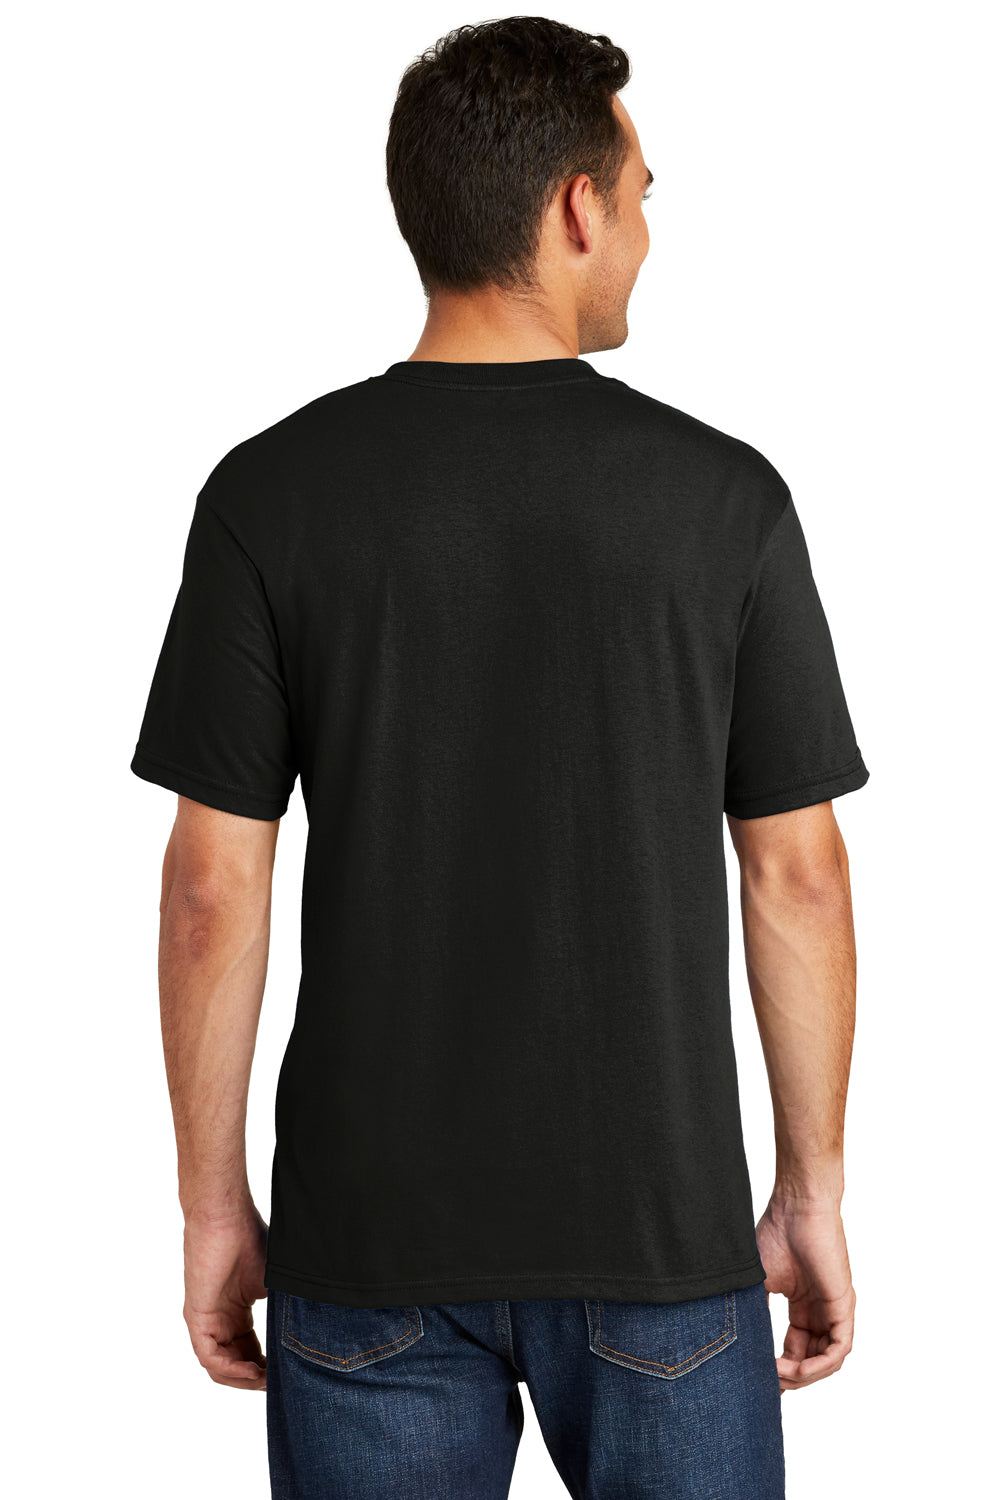 Port & Company USA100 Mens USA Made Short Sleeve Crewneck T-Shirt Black Back